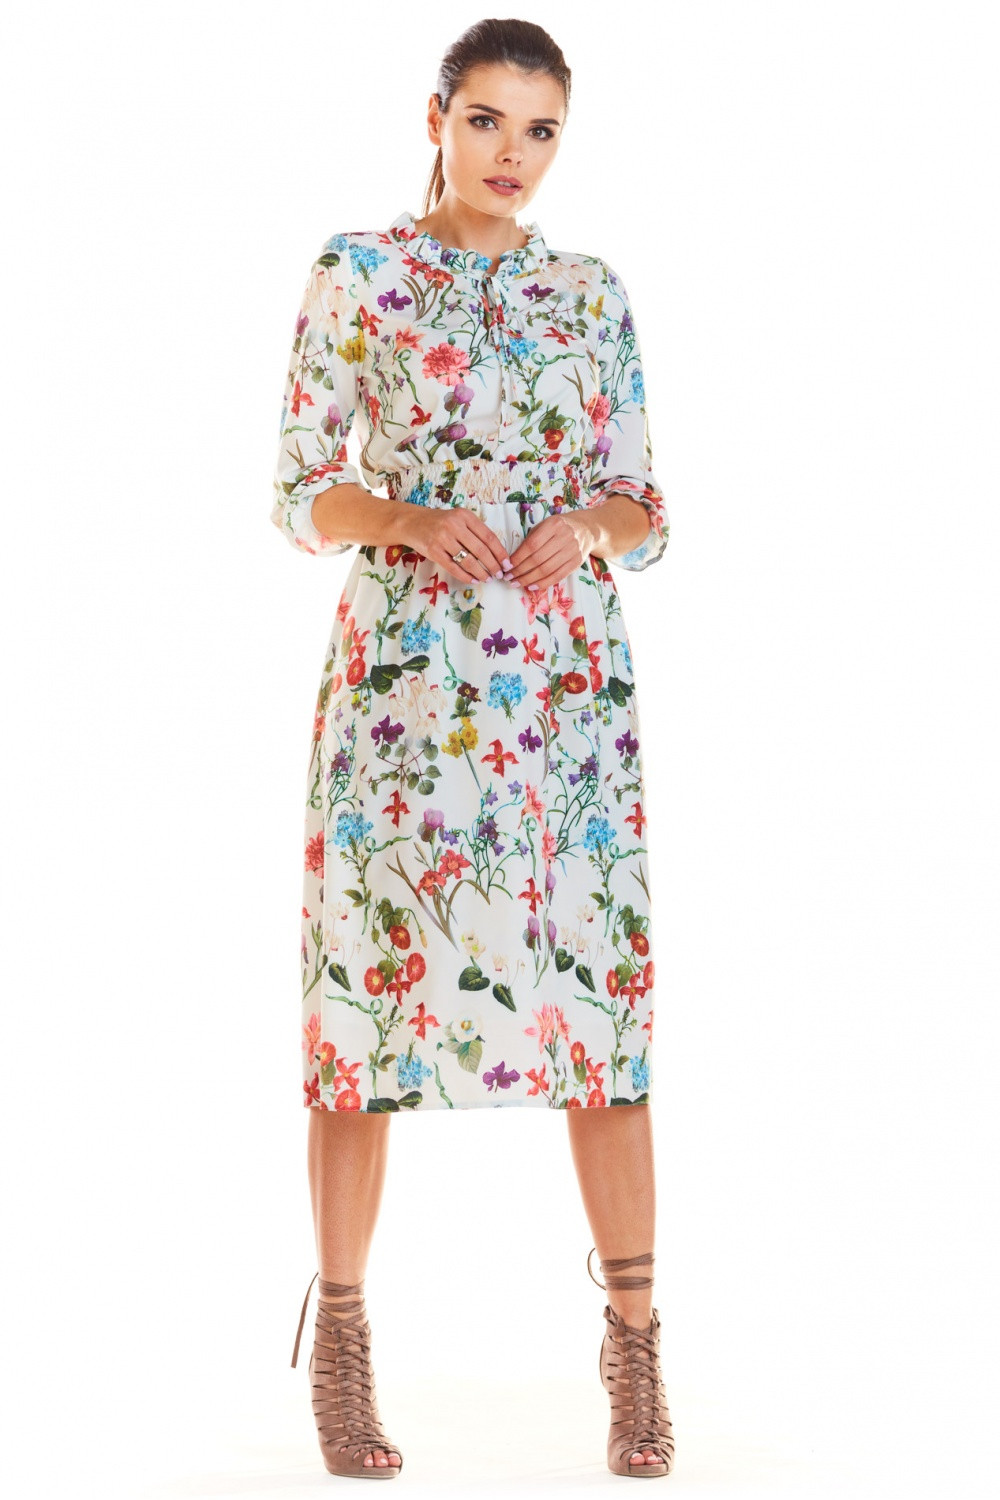 Denní šaty model M201 bílé - květovaný vzor - Infinite You květy 42/XL